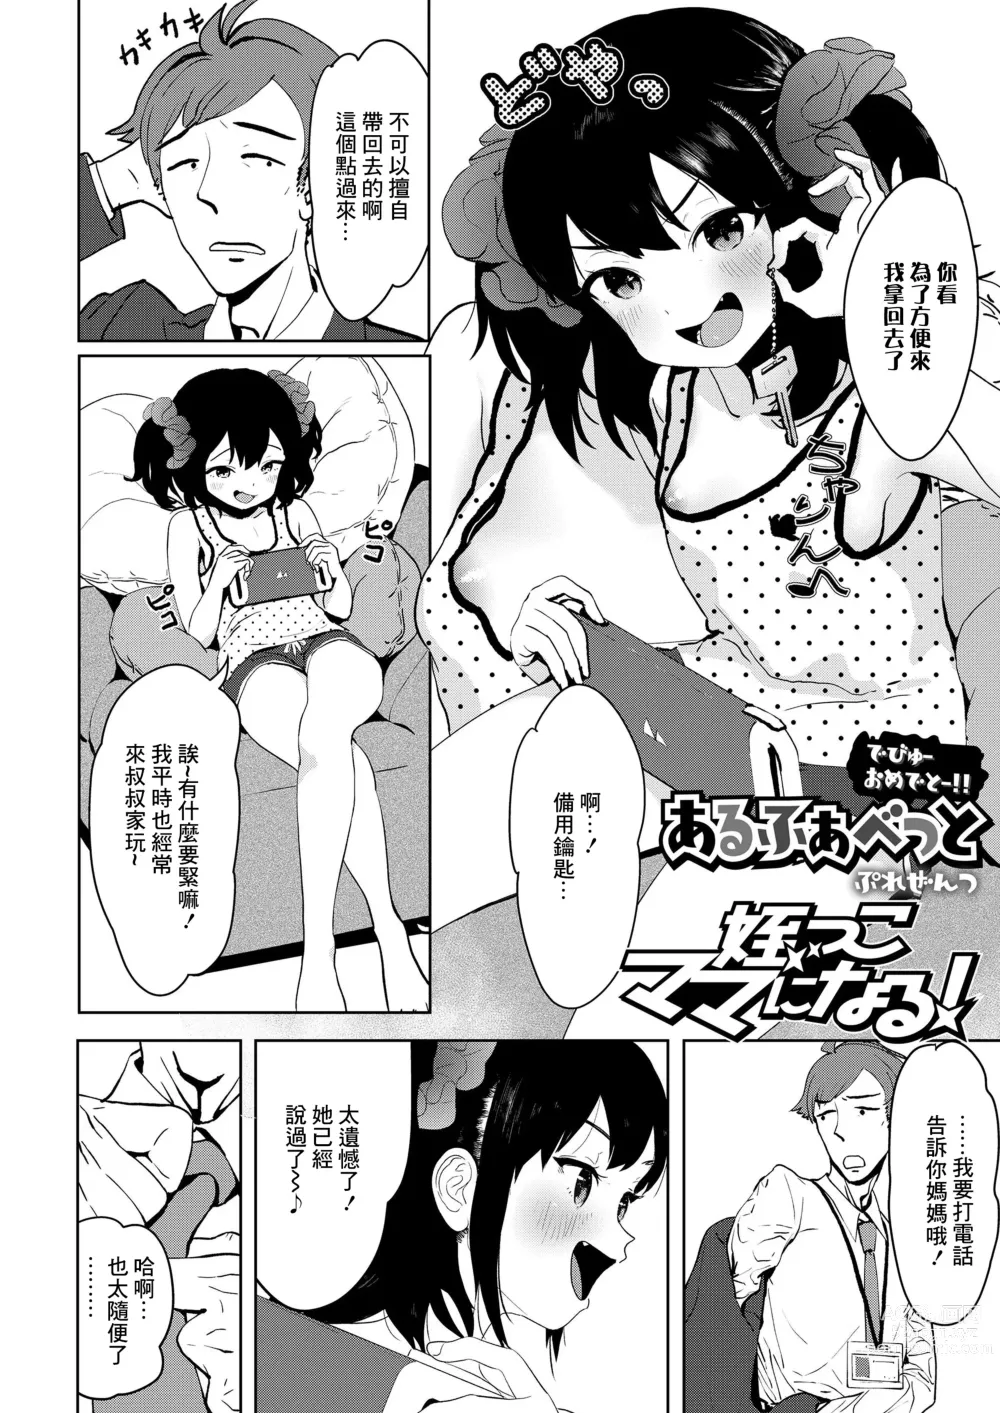 Page 2 of manga Meikko Mama ni Naru!